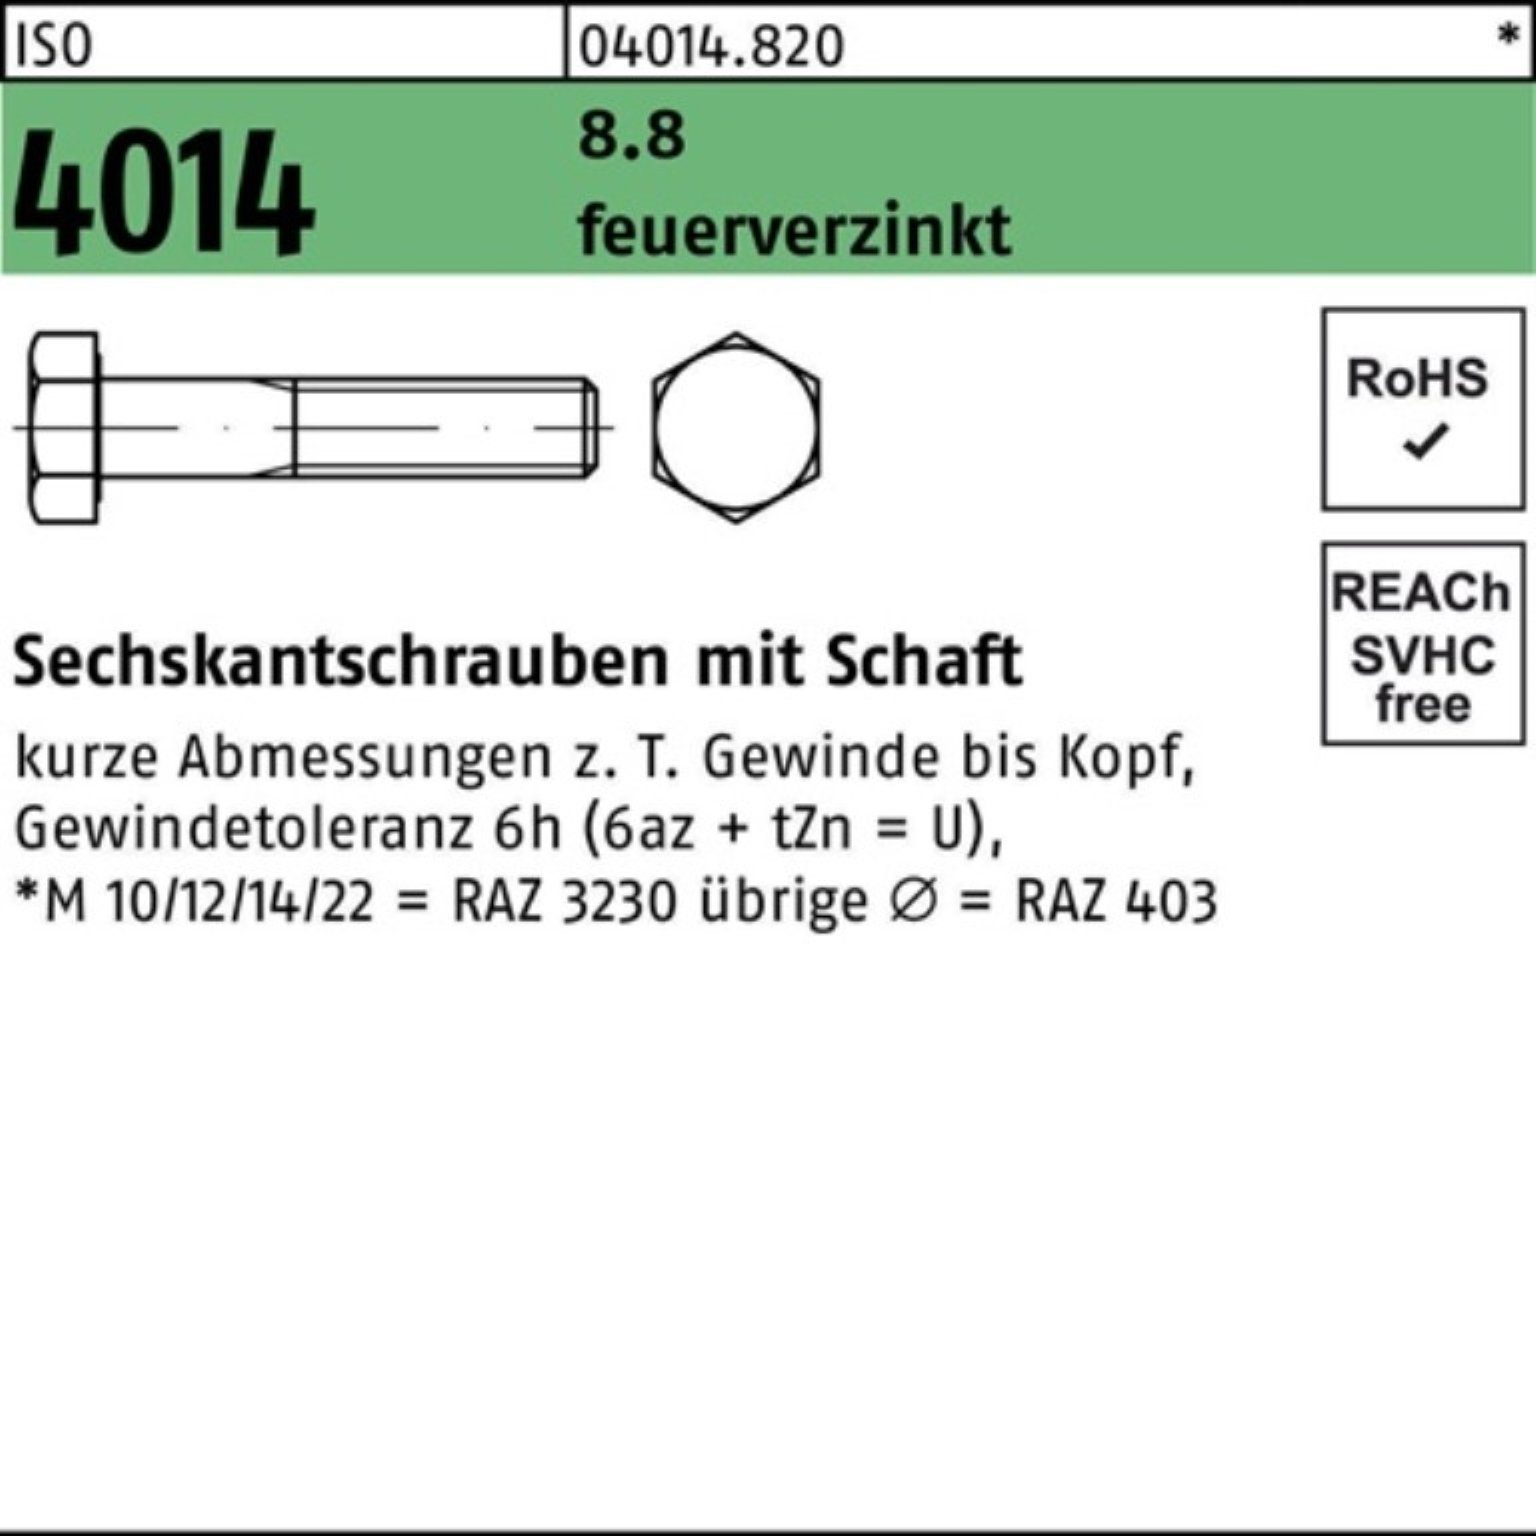 Bufab Sechskantschraube 100er feuerverz. ISO 8.8 120 2 Pack M20x 4014 Schaft Sechskantschraube